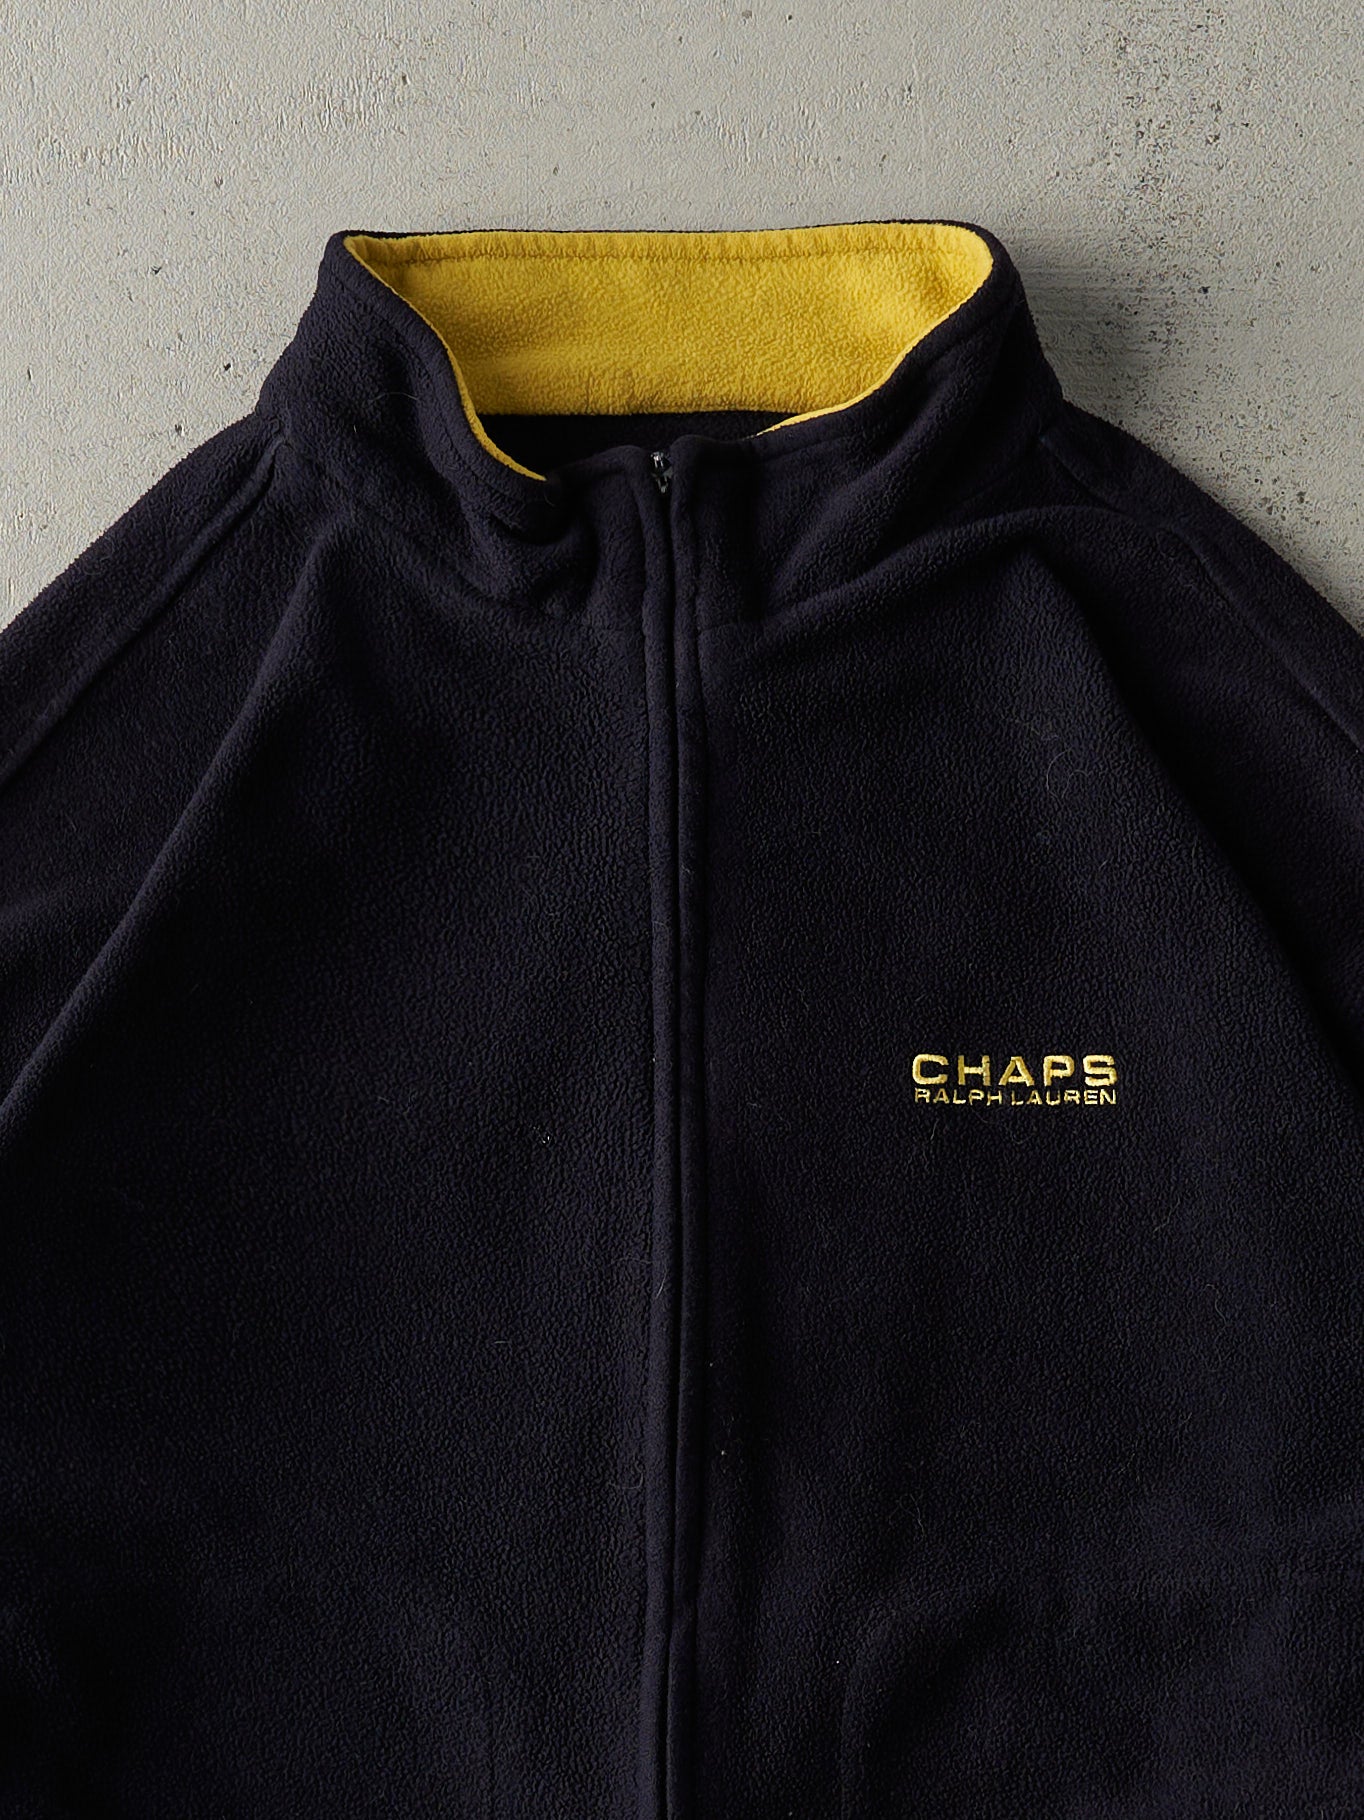 Vintage 90s Black & Yellow Chaps Ralph Lauren Zip Up Fleece Jacket (M)